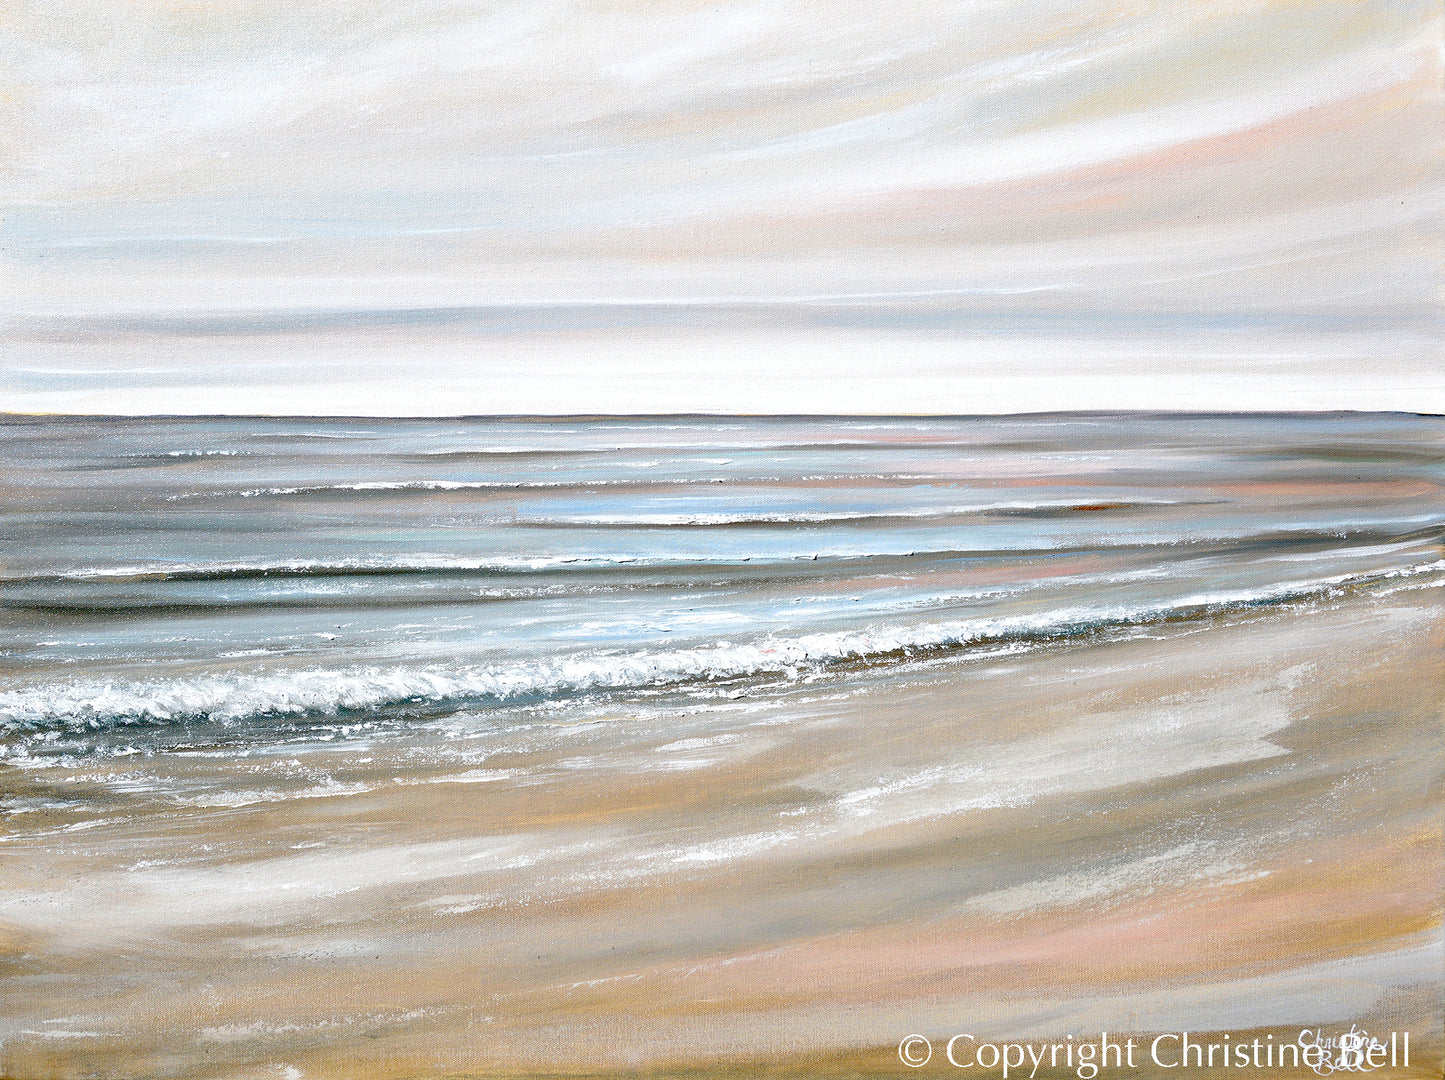 "Ocean's Harmony" GICLÉE PRINT, Neutral Coastal Abstract Seascape Painting